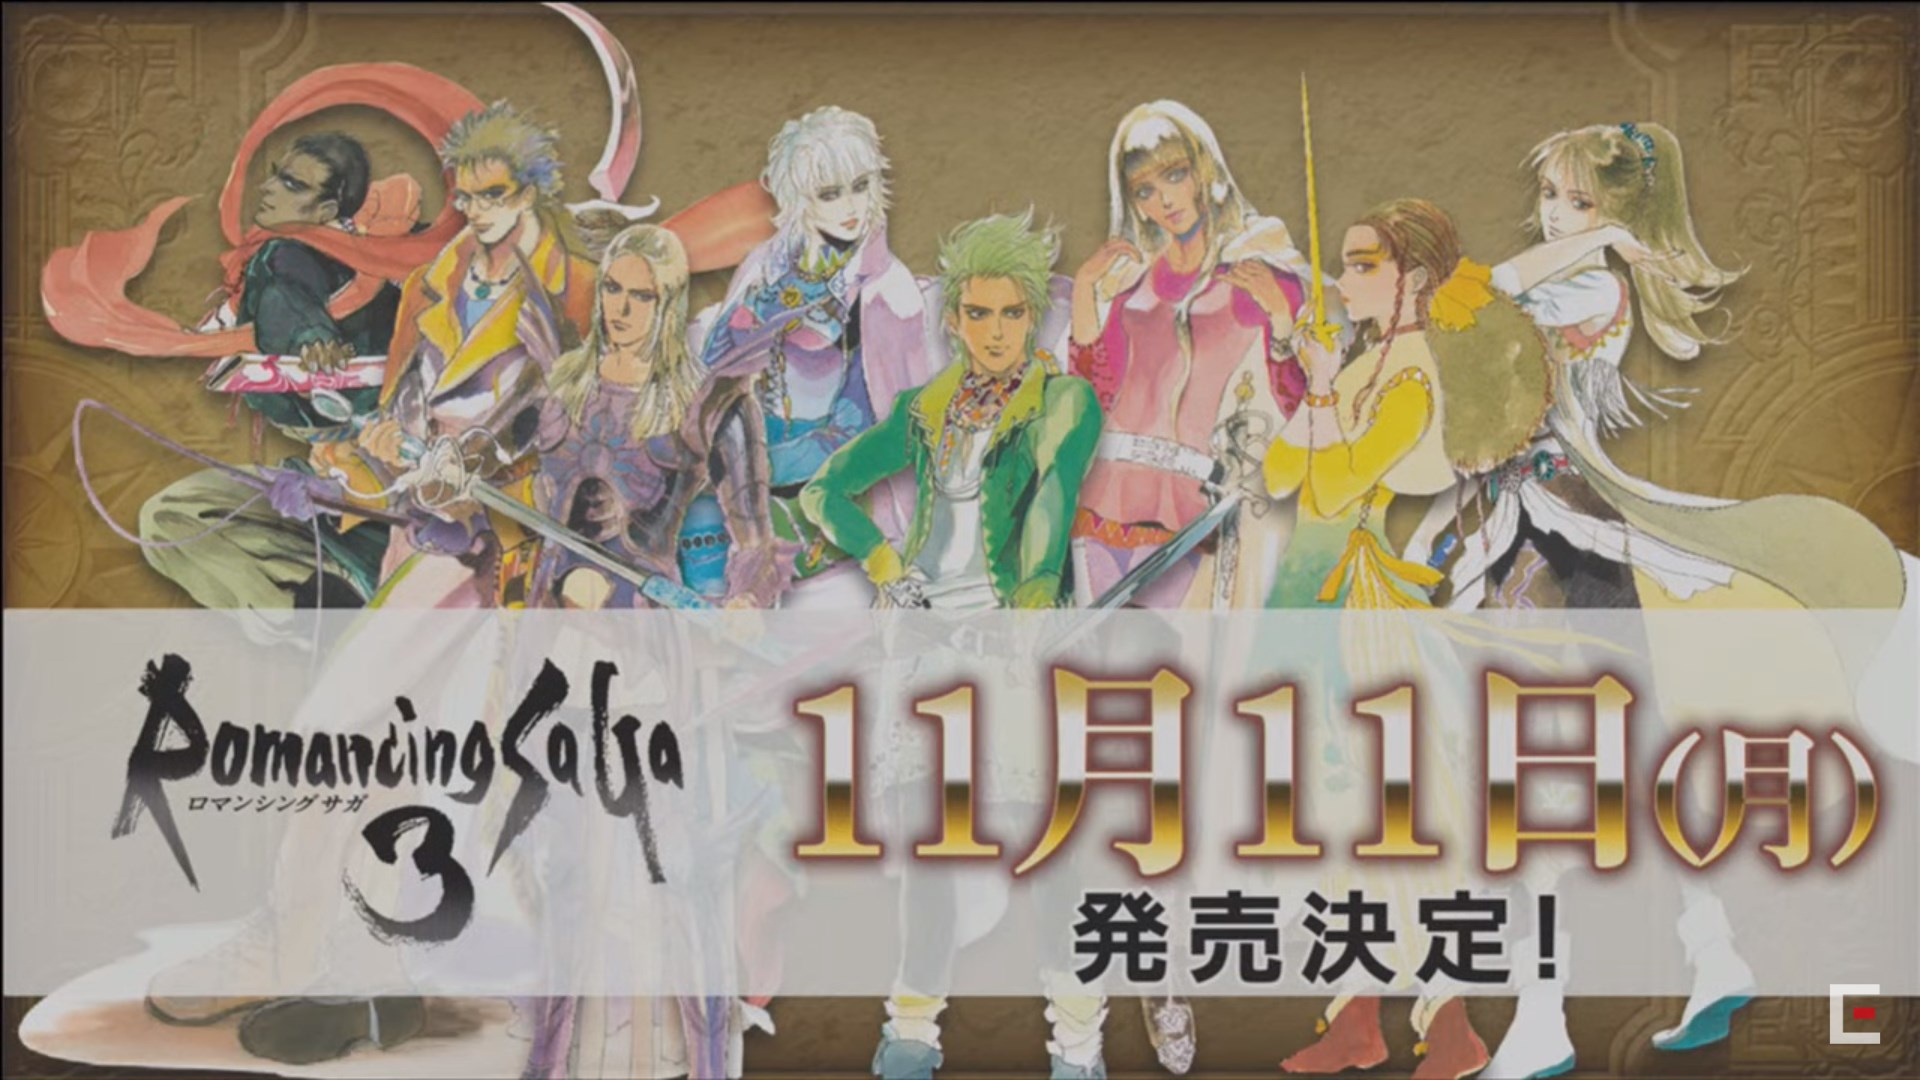 Romancing SaGa 3 Remaster sẽ phát hành vào 11 tháng 11 ở Nhật Bản